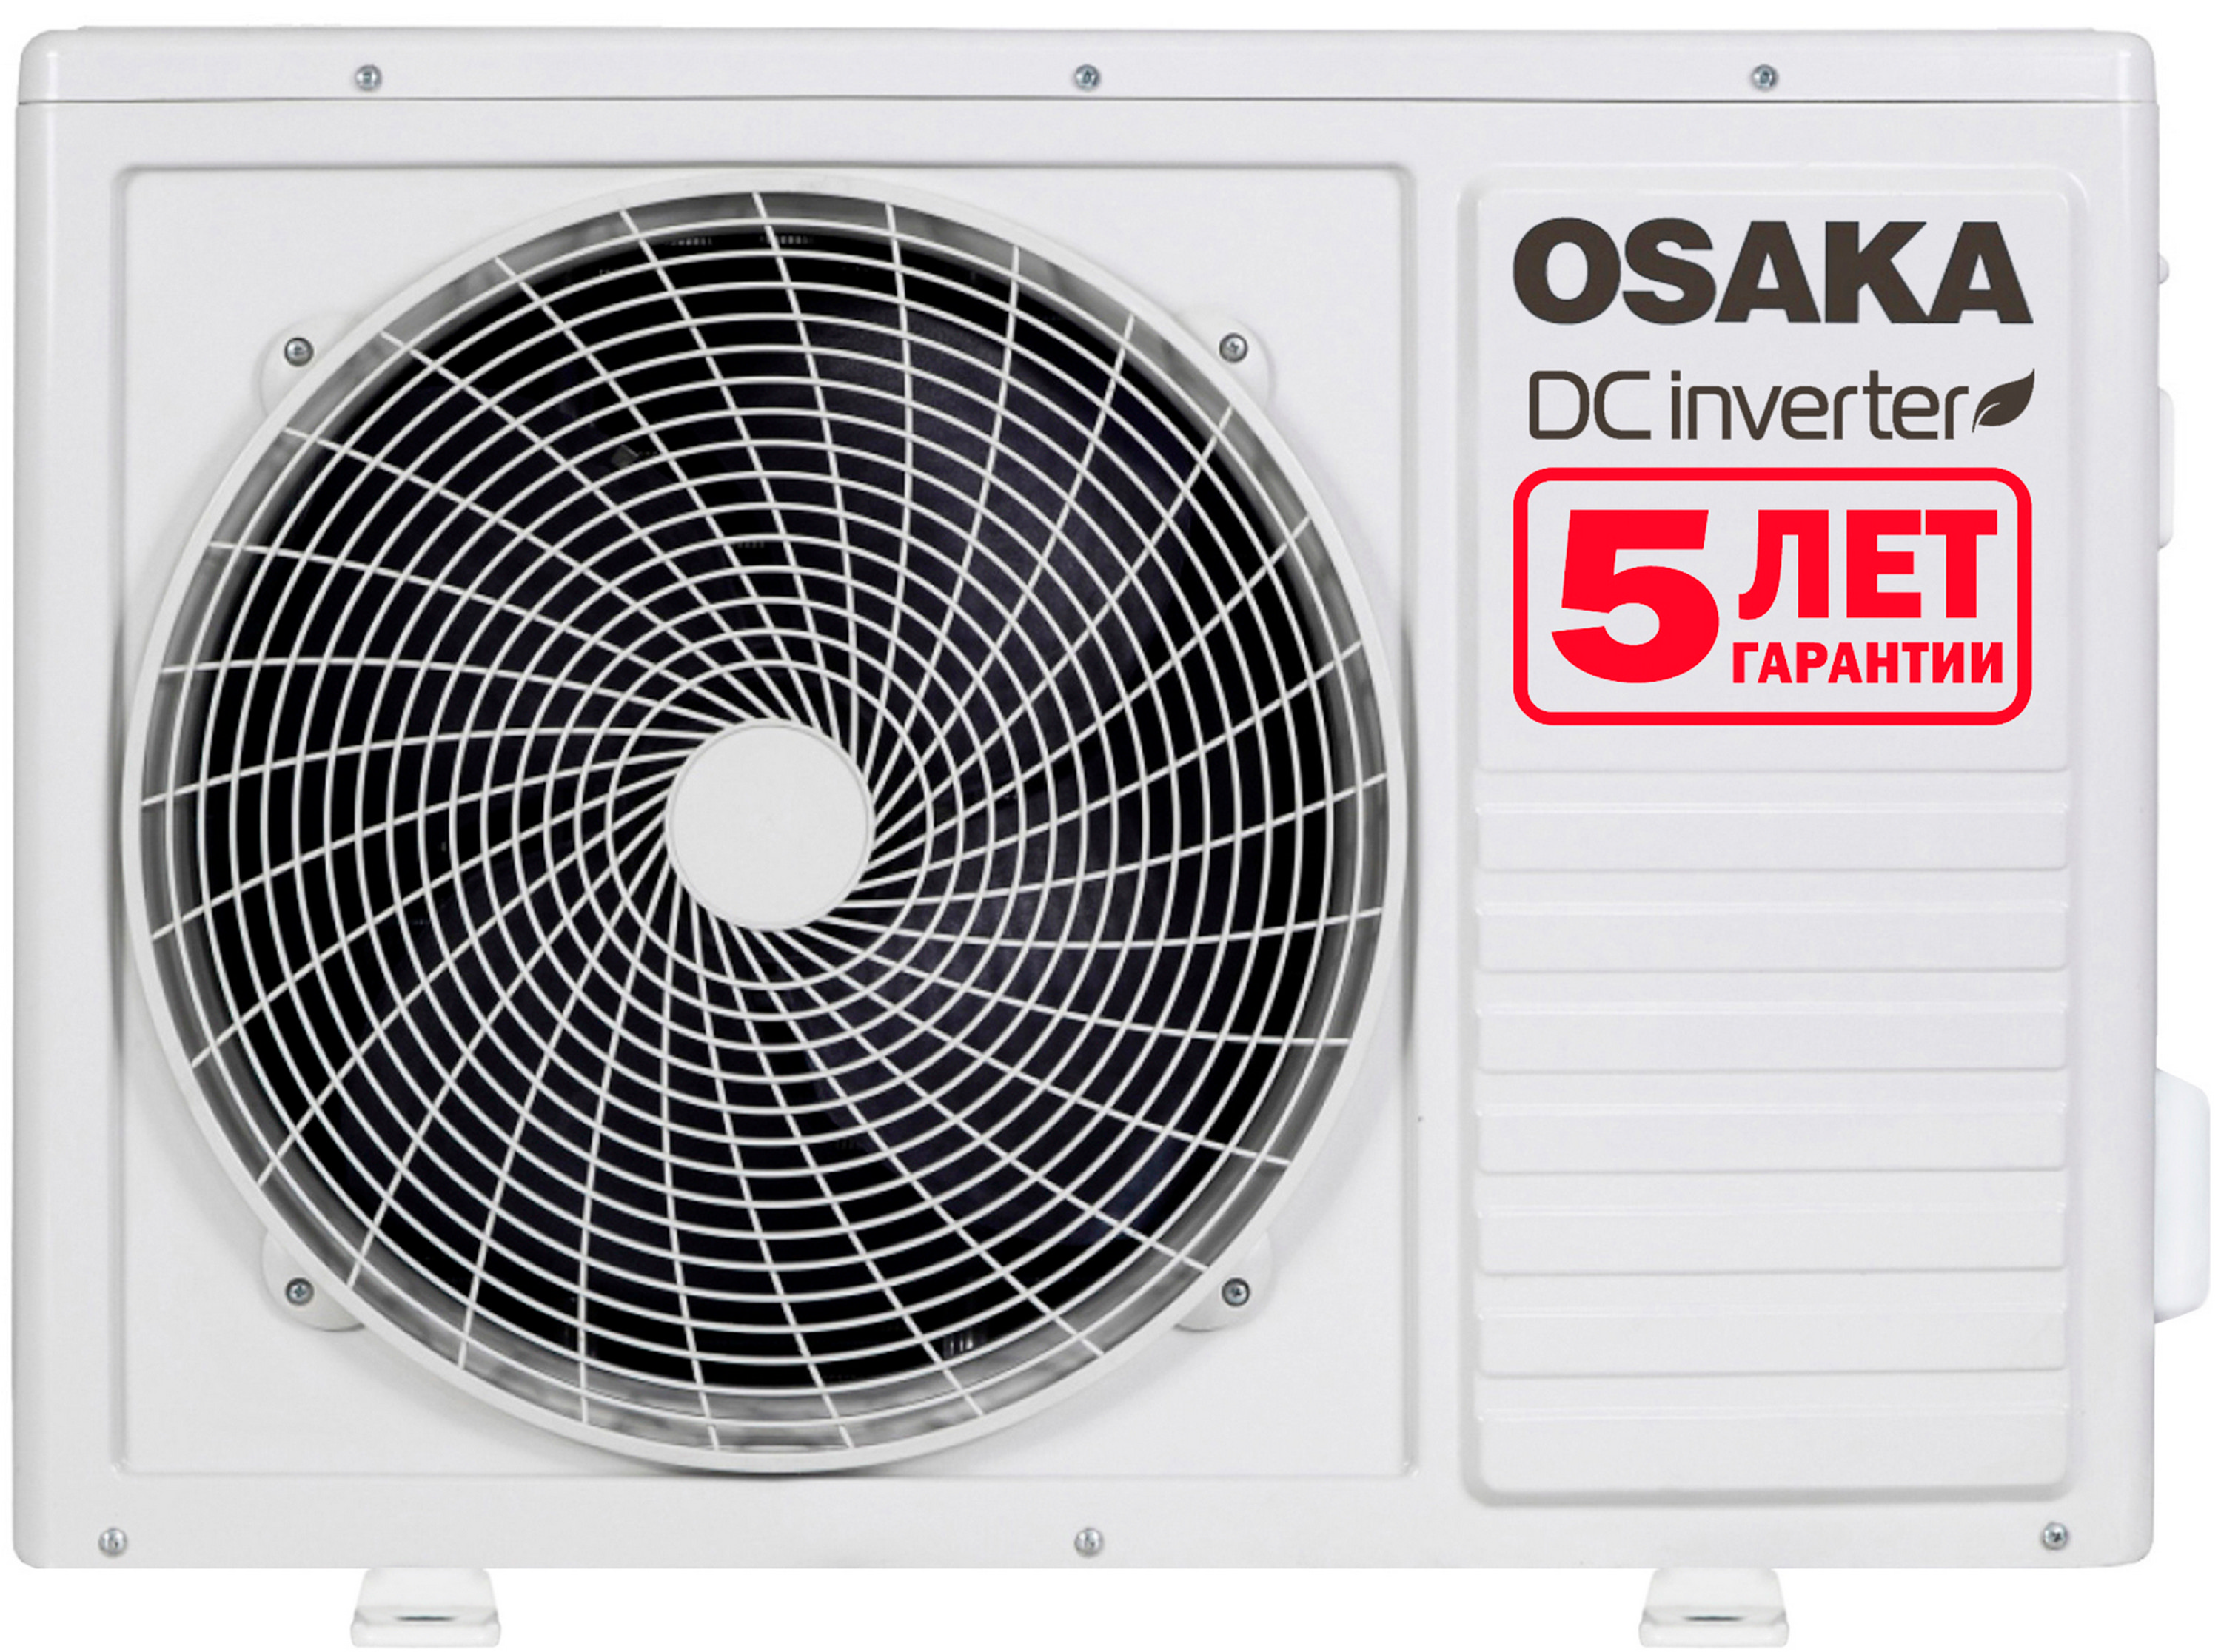 Кондиционер сплит-система Osaka Power Pro STVP-09HH отзывы - изображения 5